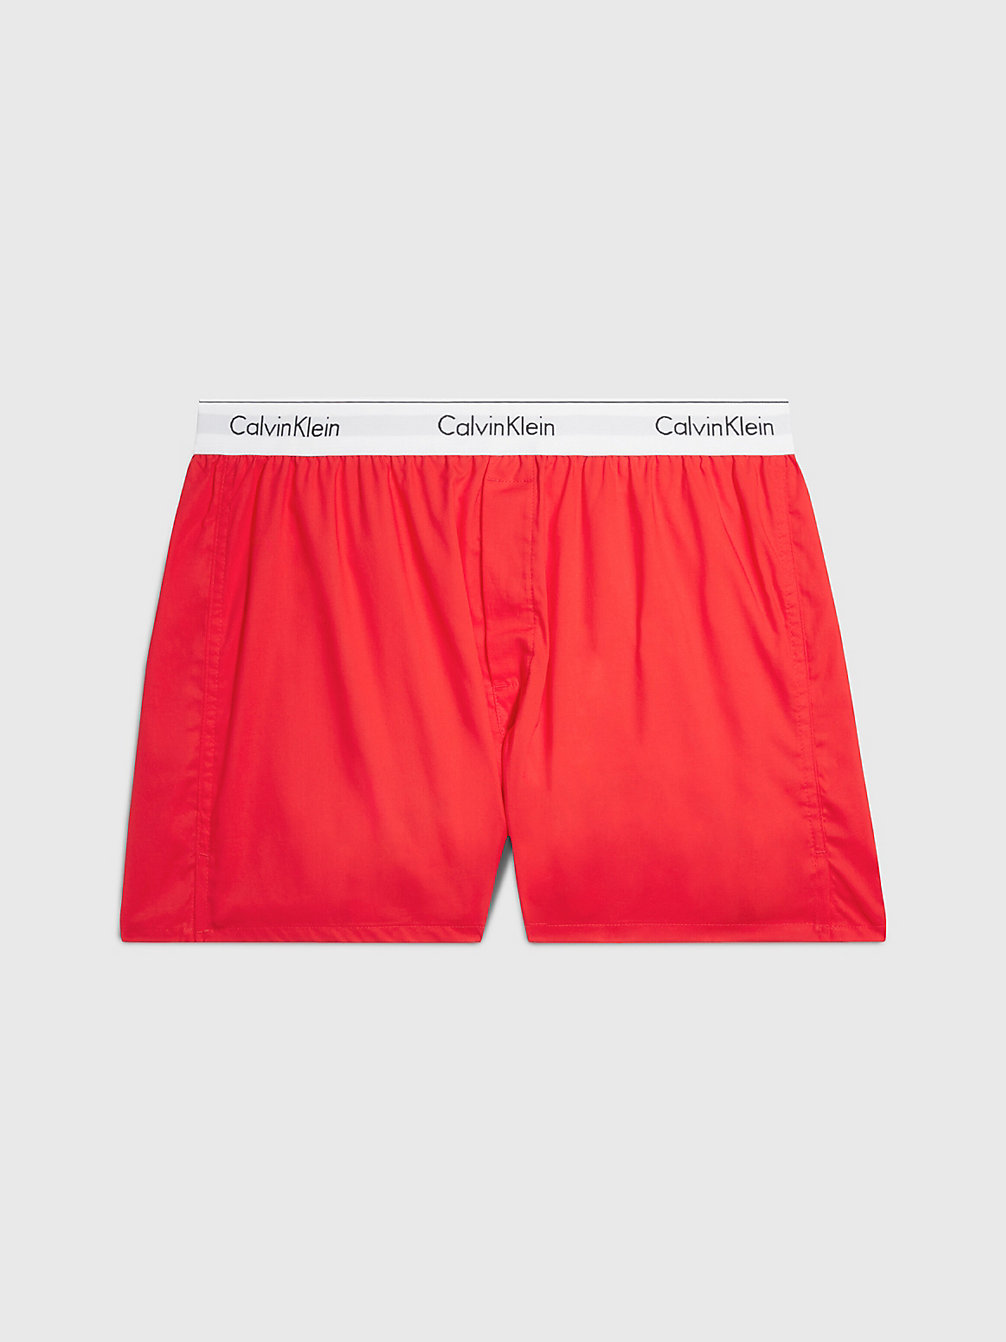 ORANGE ODYSSEY Slim Fit Boxershorts - Modern Cotton undefined Herren Calvin Klein